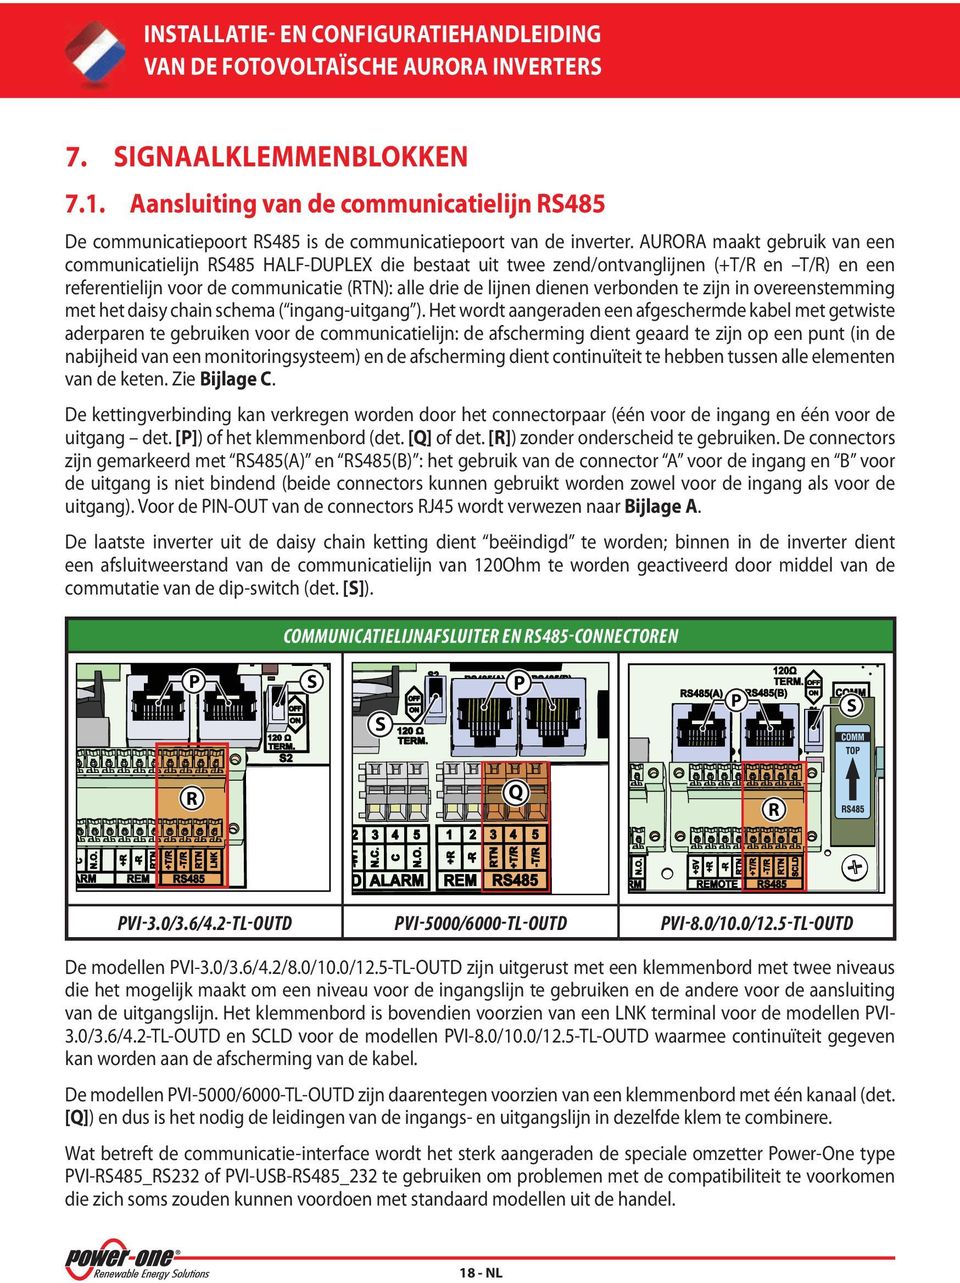 AURORA maakt gebruik van een communicatielijn RS485 HALF-DUPLEX die bestaat uit twee zend/ontvanglijnen (+T/R en T/R) en een referentielijn voor de communicatie (RTN): alle drie de lijnen dienen